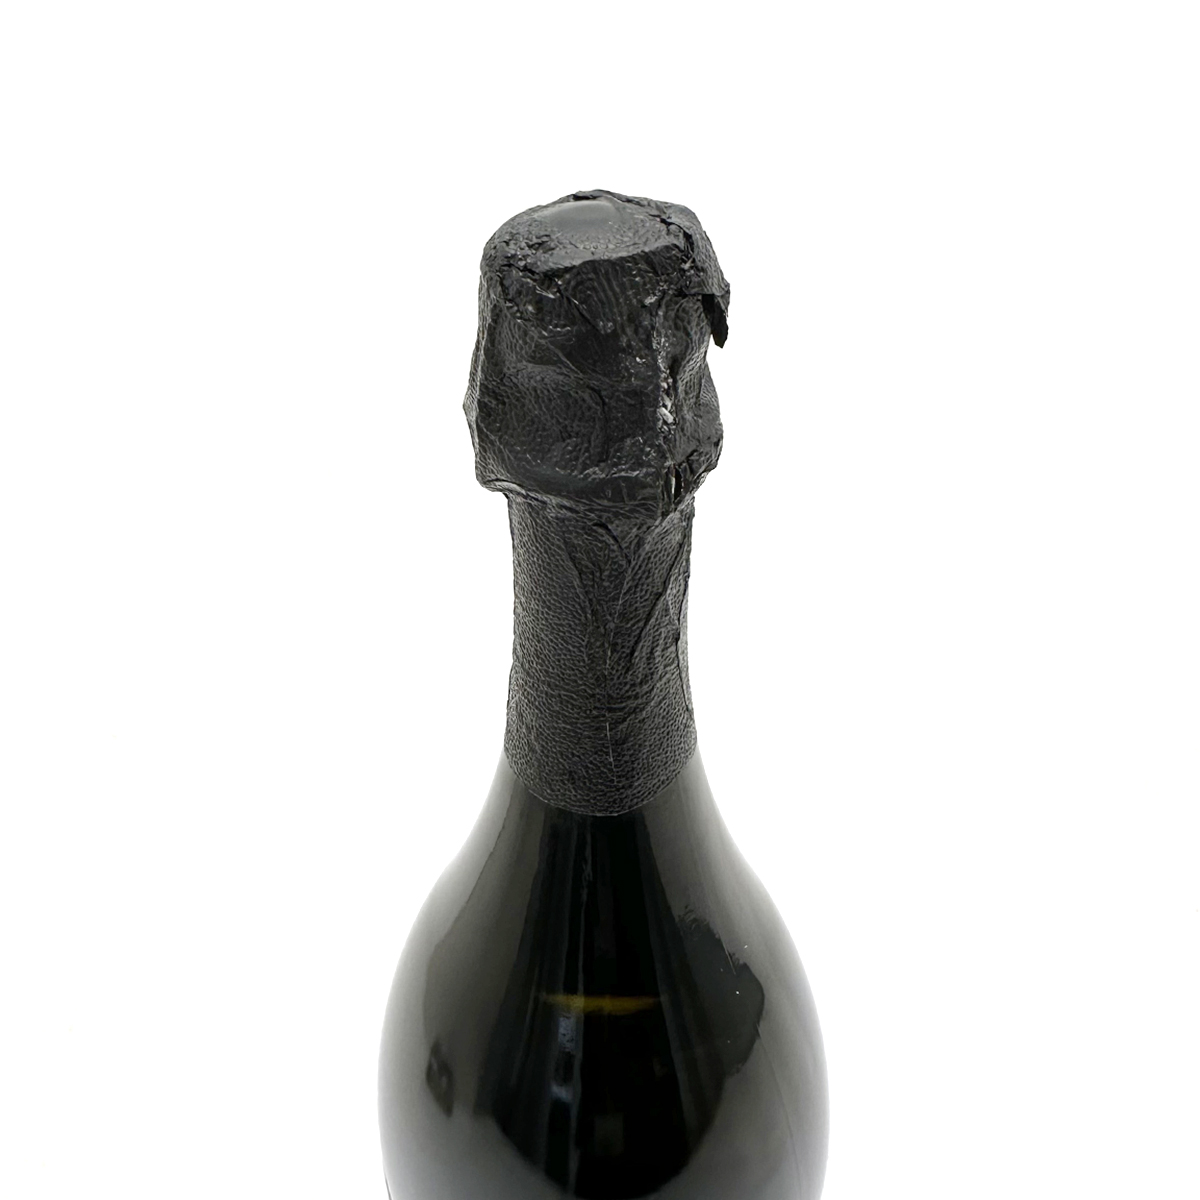 ドン ペリニヨン(Dom Perignon) ヴィンテージ 2012 シャンパン ドンペリ 750ml 12.5度